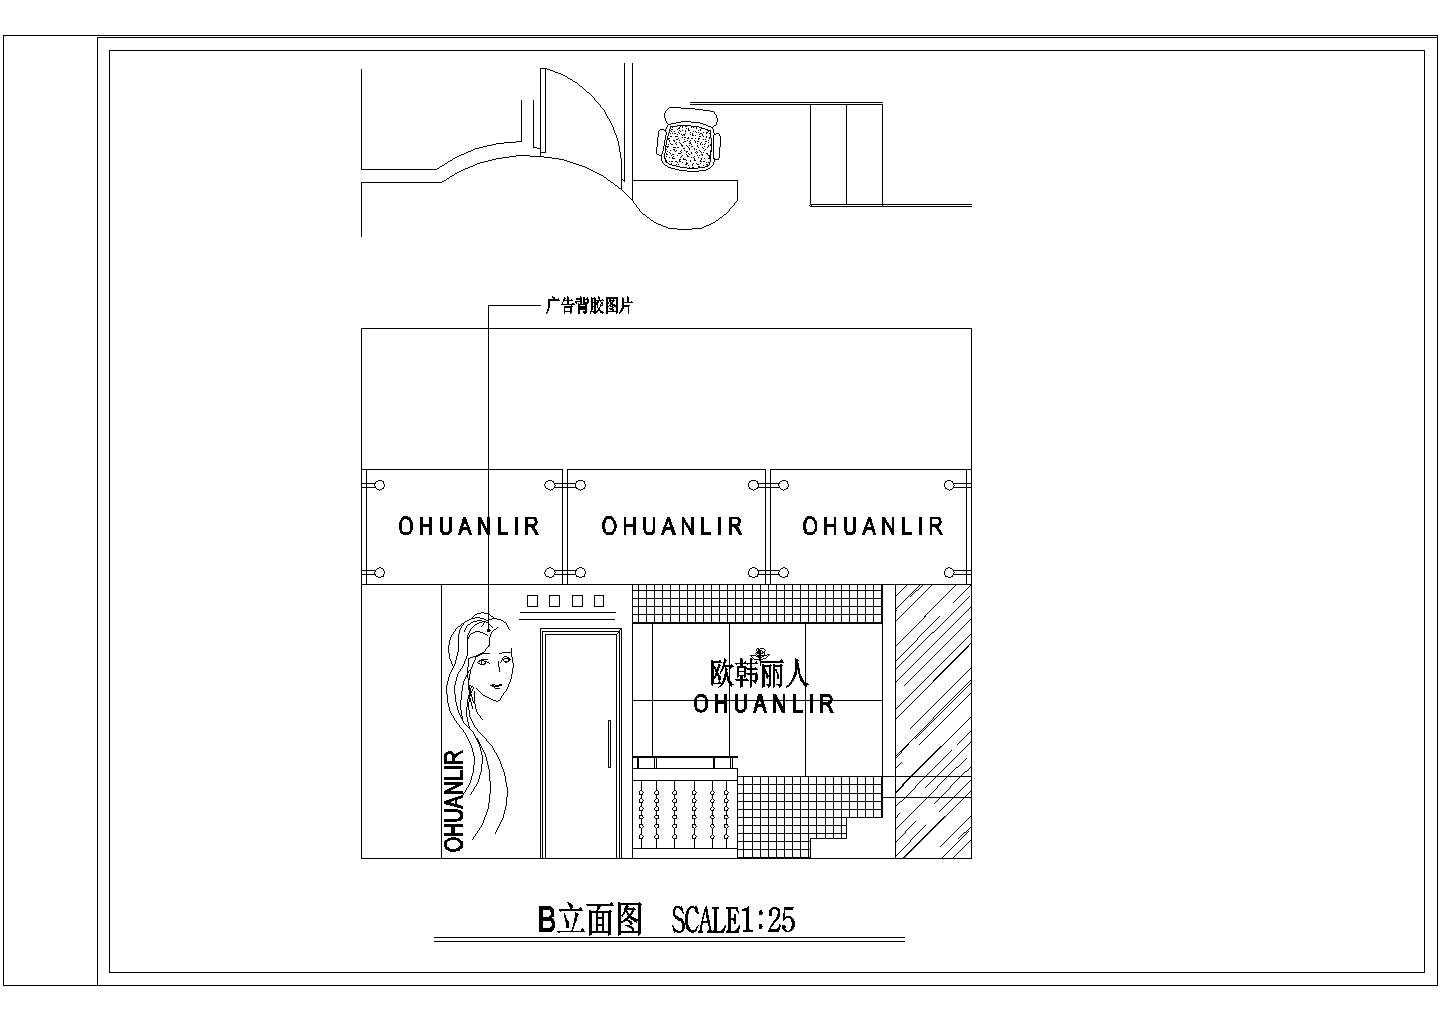 步行街某小型服装店室内装修设计cad平面施工图(含阁楼平面布置图)